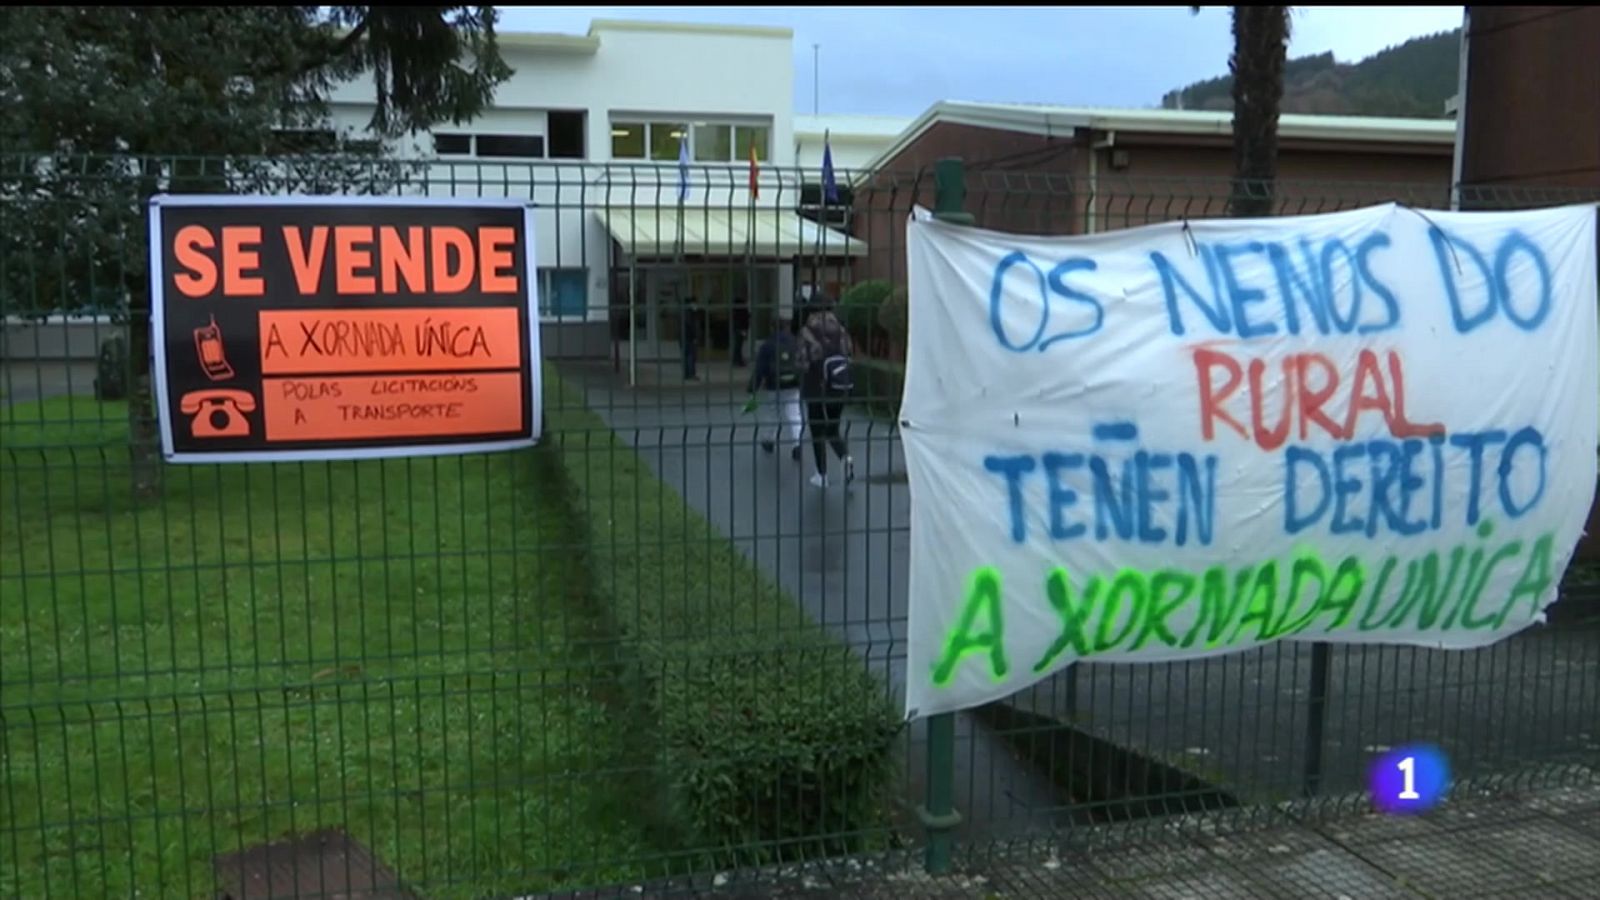 ANPAS de Lugo constitúen unha plataforma en defensa das escolas rurais